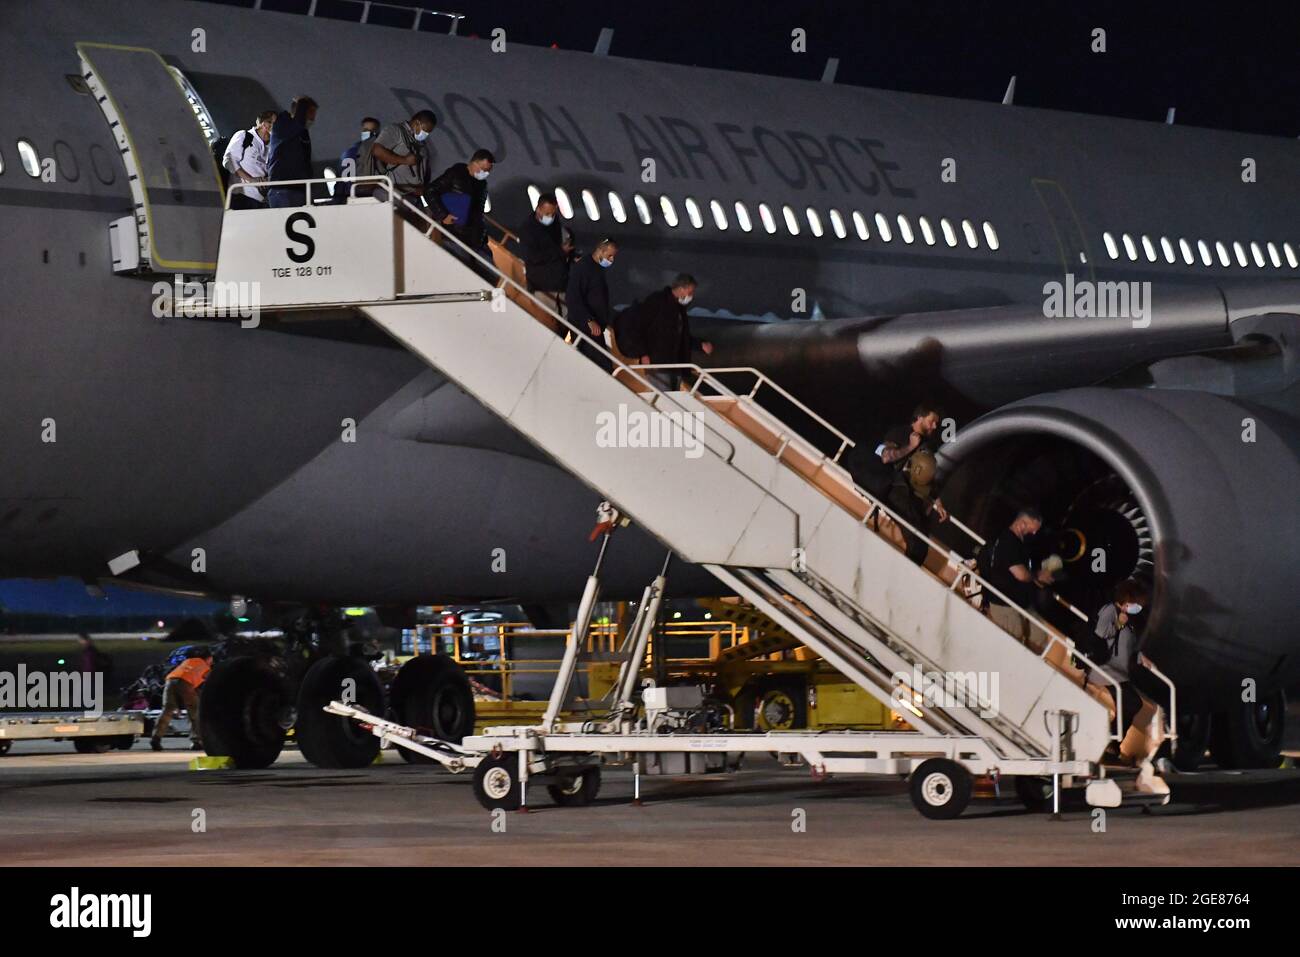 Un avion atterrit à la RAF Brize Norton, Oxfordshsire, transportant des ressortissants britanniques et des Afghans de Kabal en Afghanistan. Date de la photo: Mardi 17 août 2021. Banque D'Images